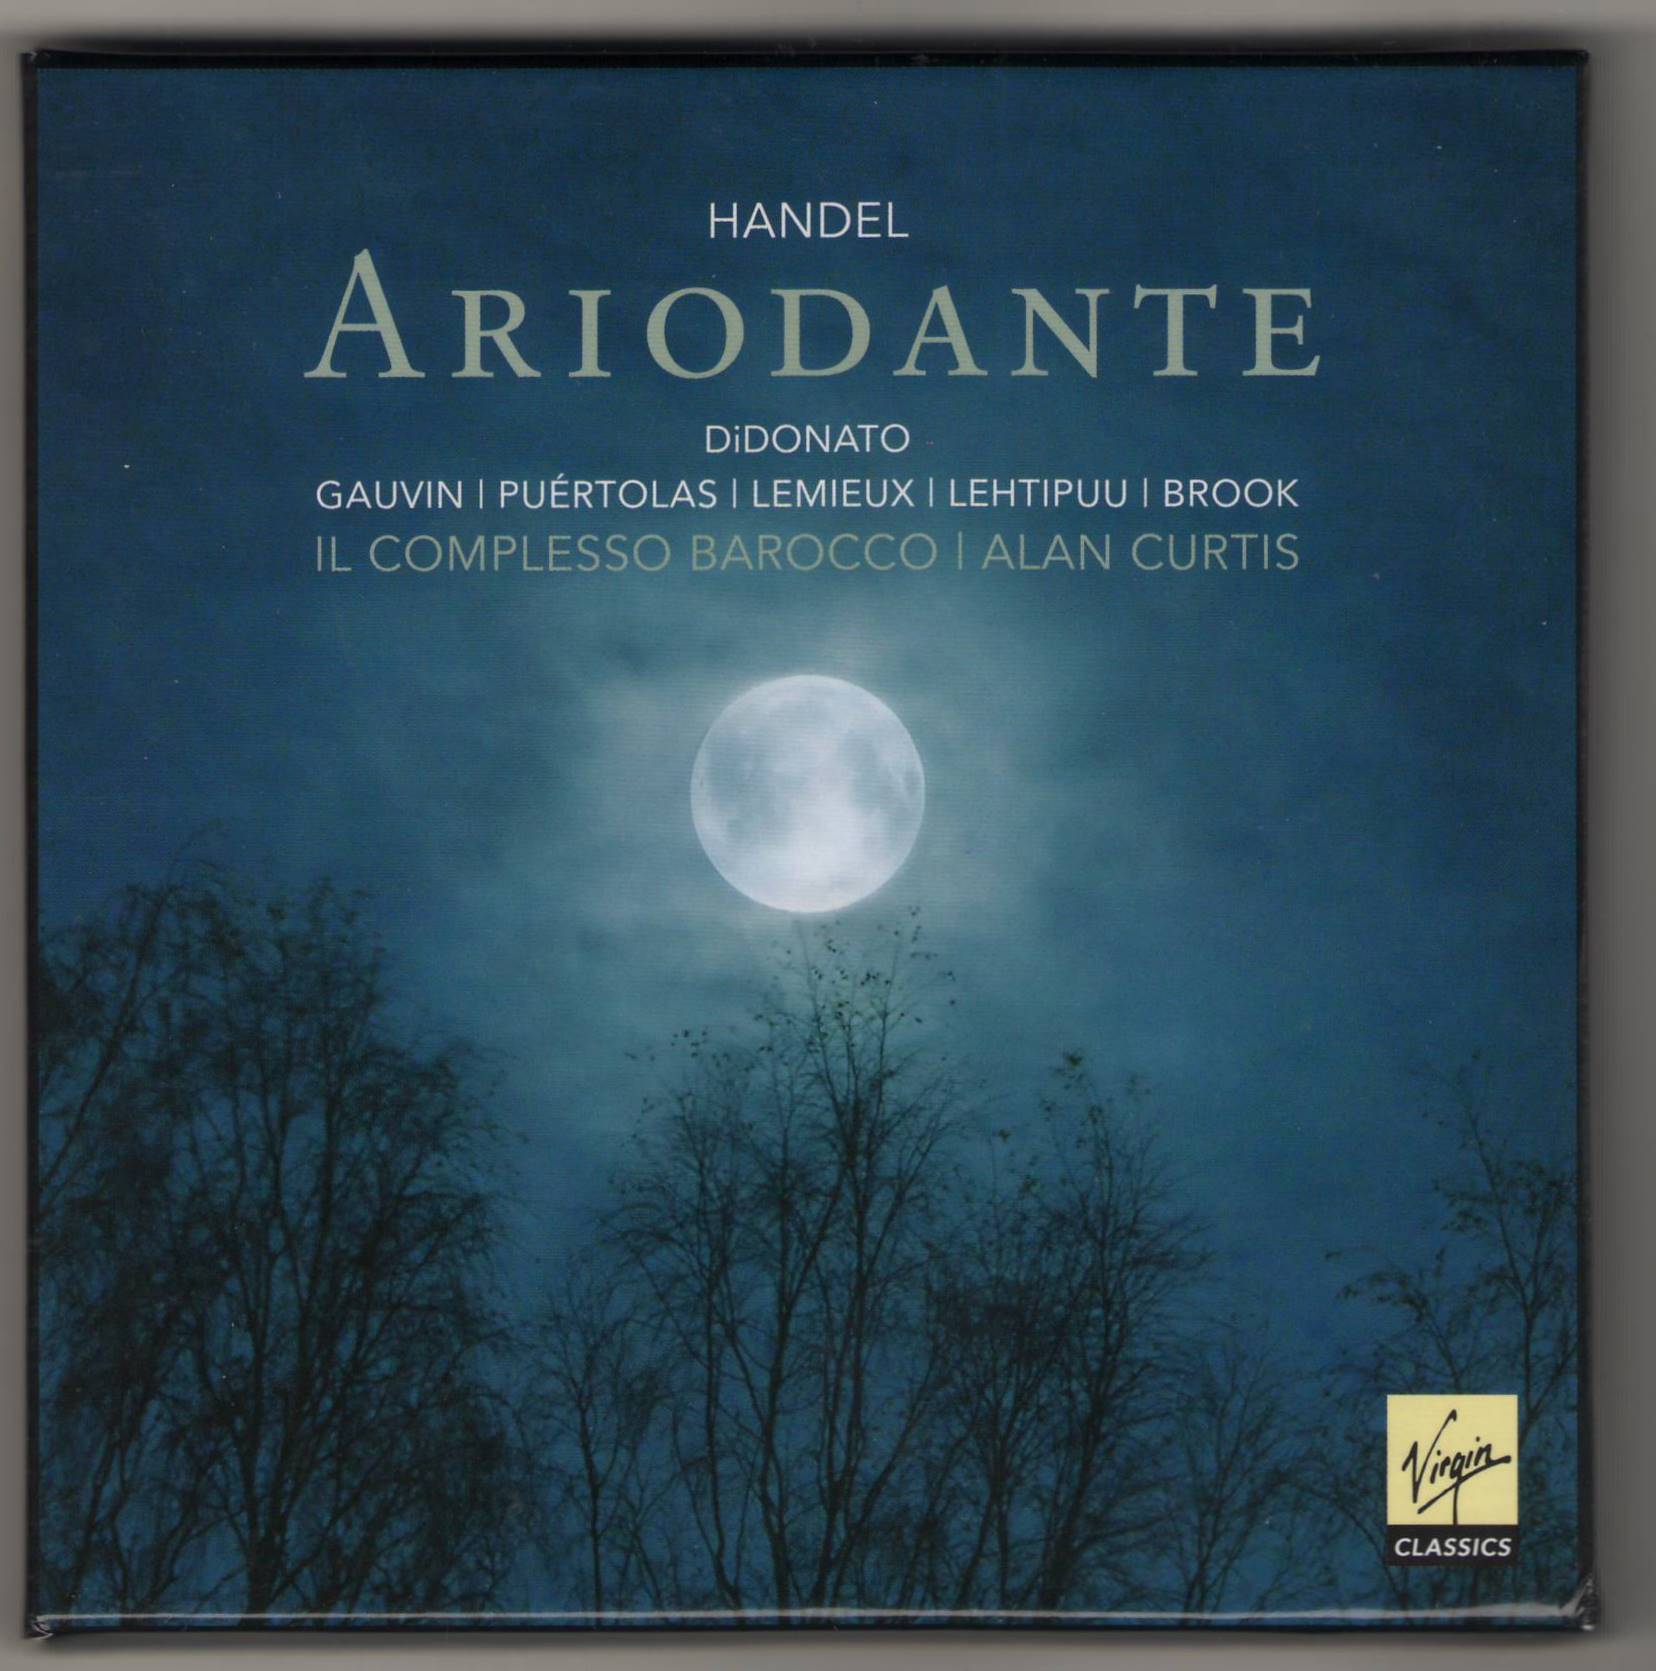 Handel_Ariodante_virgin